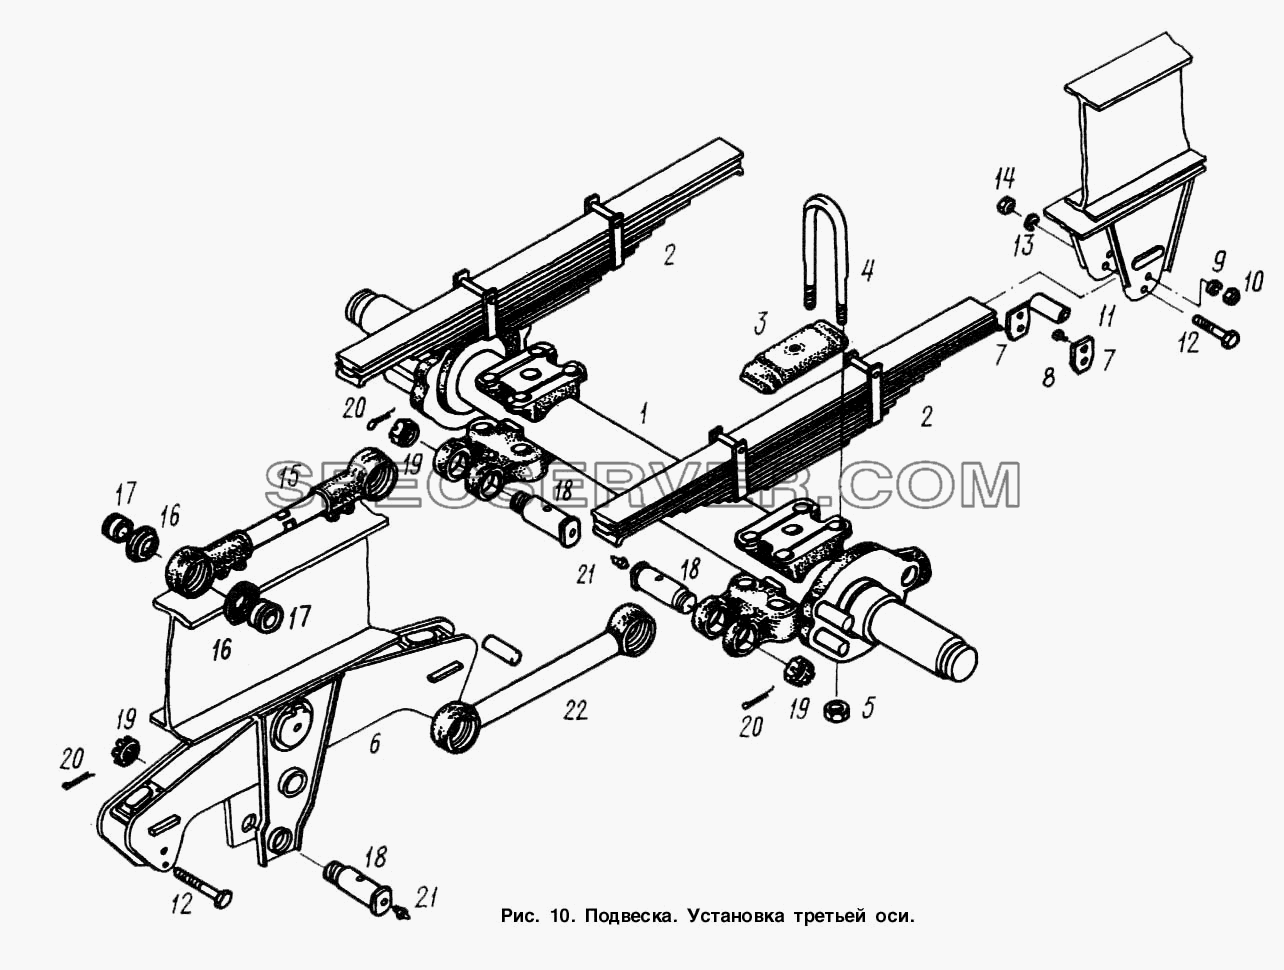 Подвеска. Установка третьей оси для МАЗ-9758 (список запасных частей)